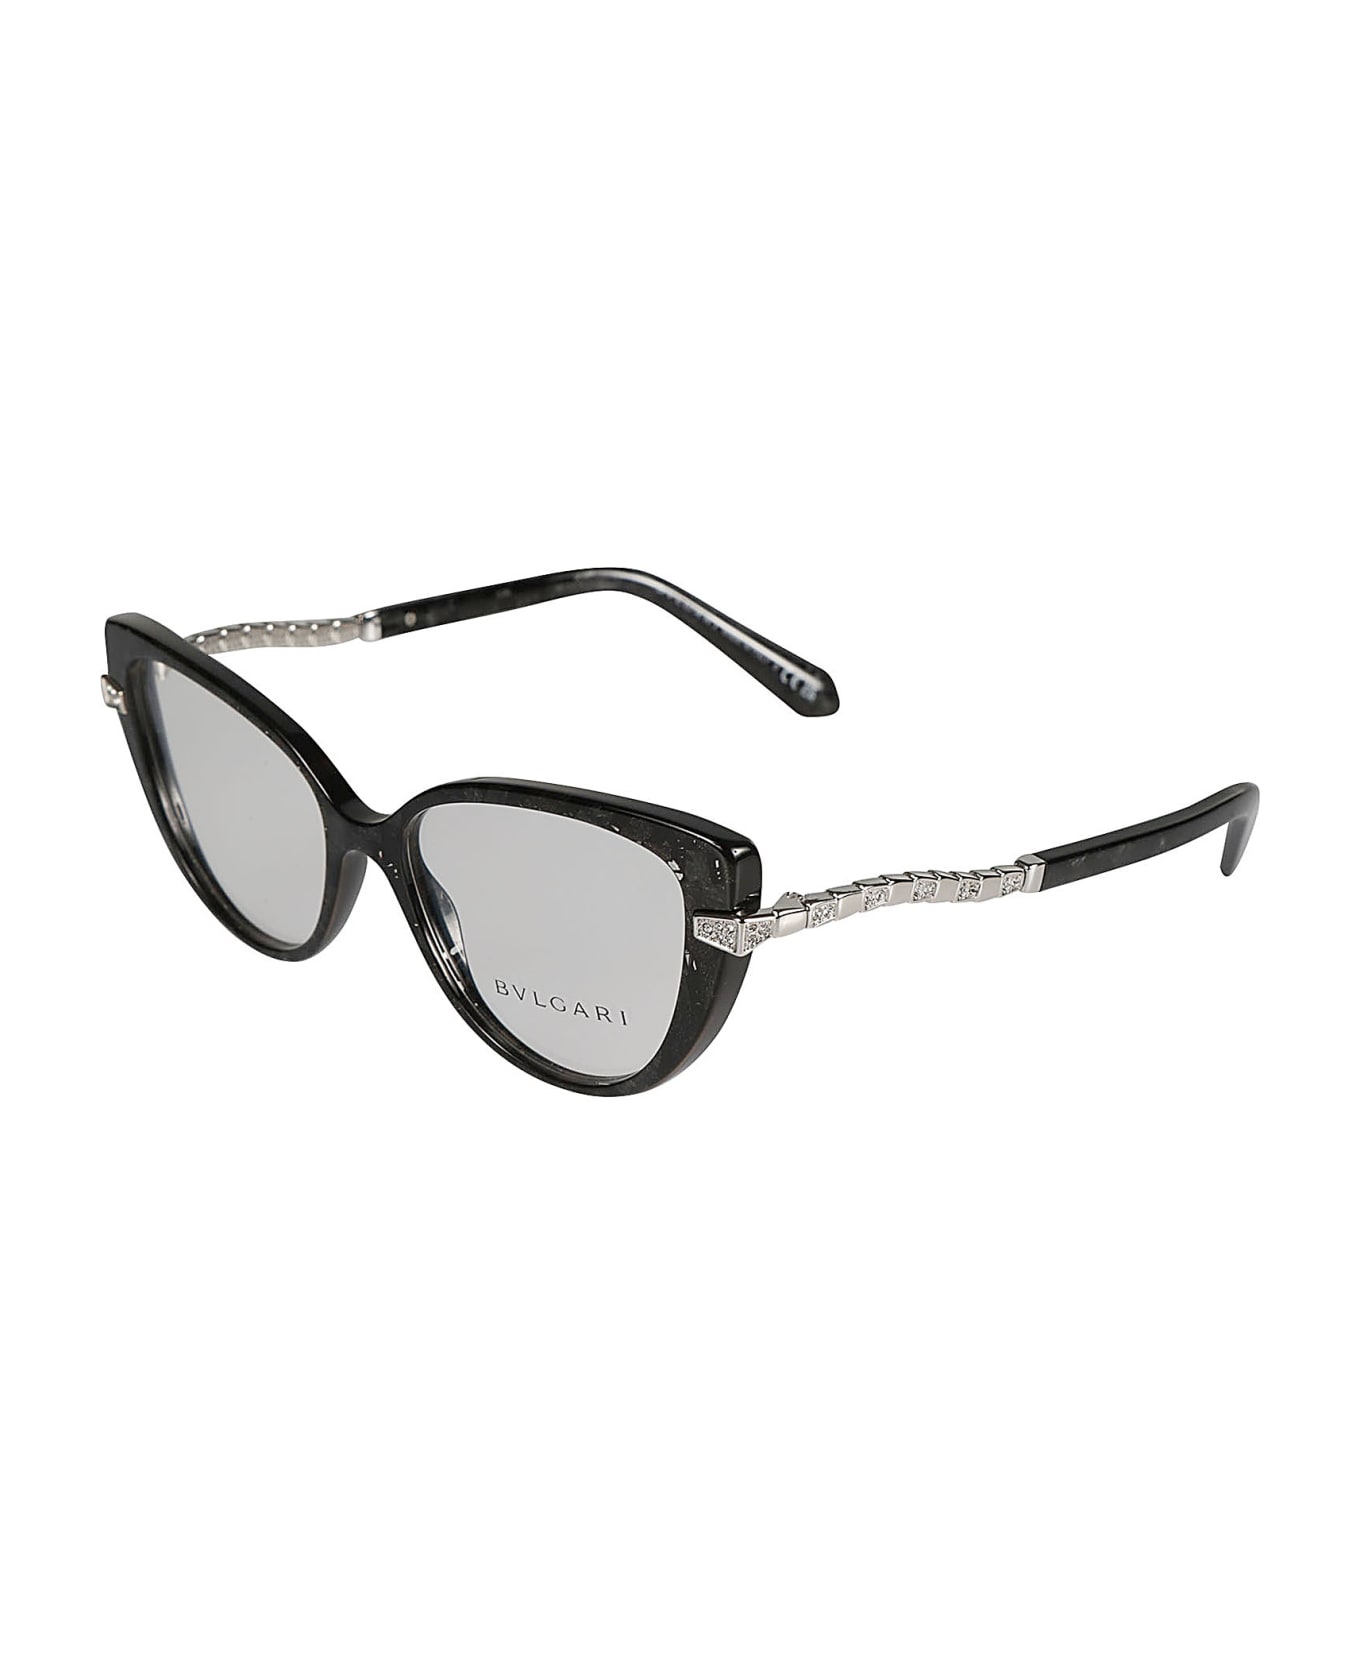 Bulgari Crystal Embellished Cat-eye Glasses - 5412 アイウェア